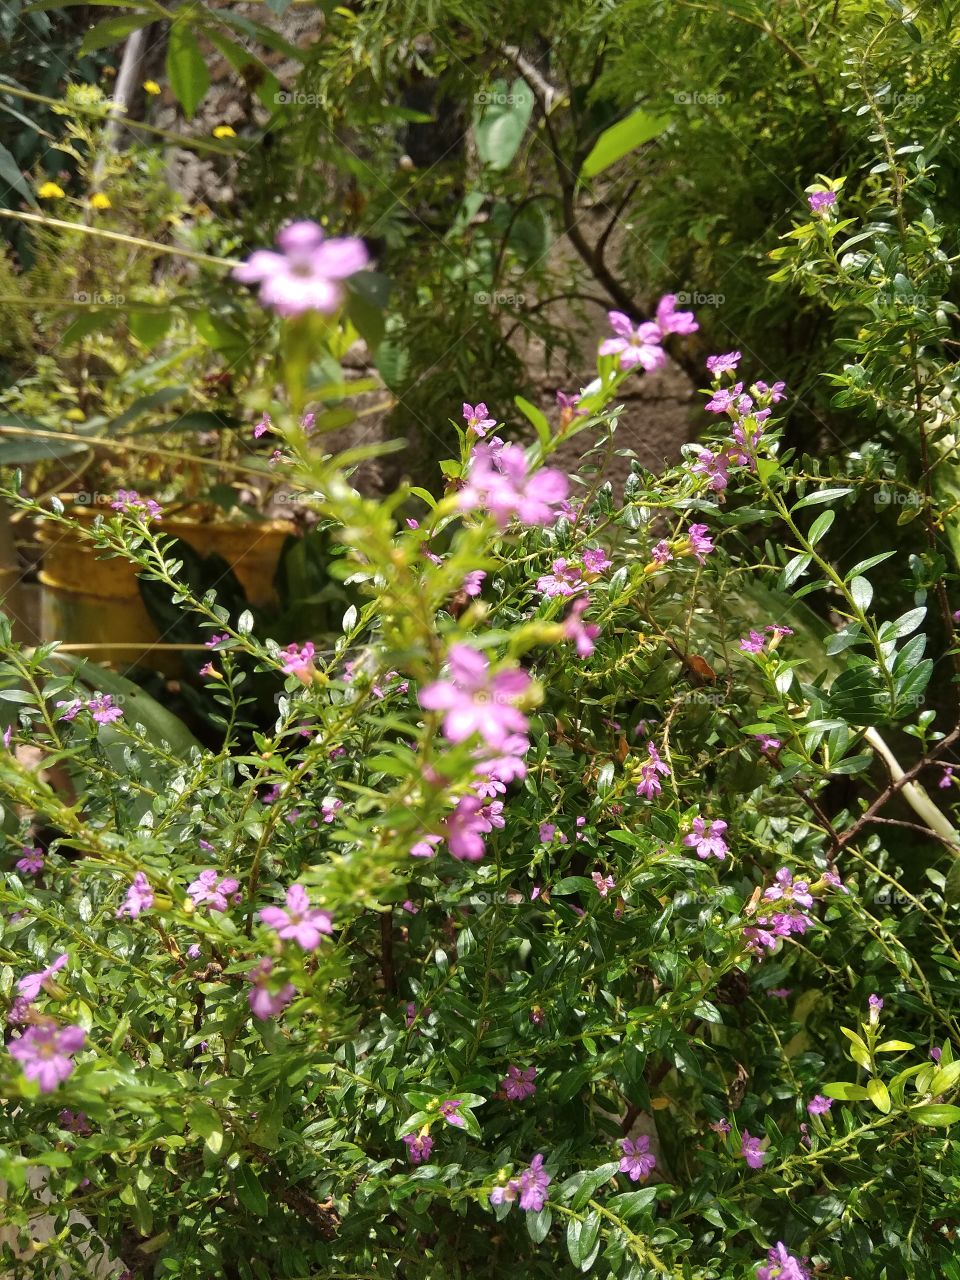 He aquí diminutas flores adornando el jardín ,una hermosa expresión de la naturaleza..